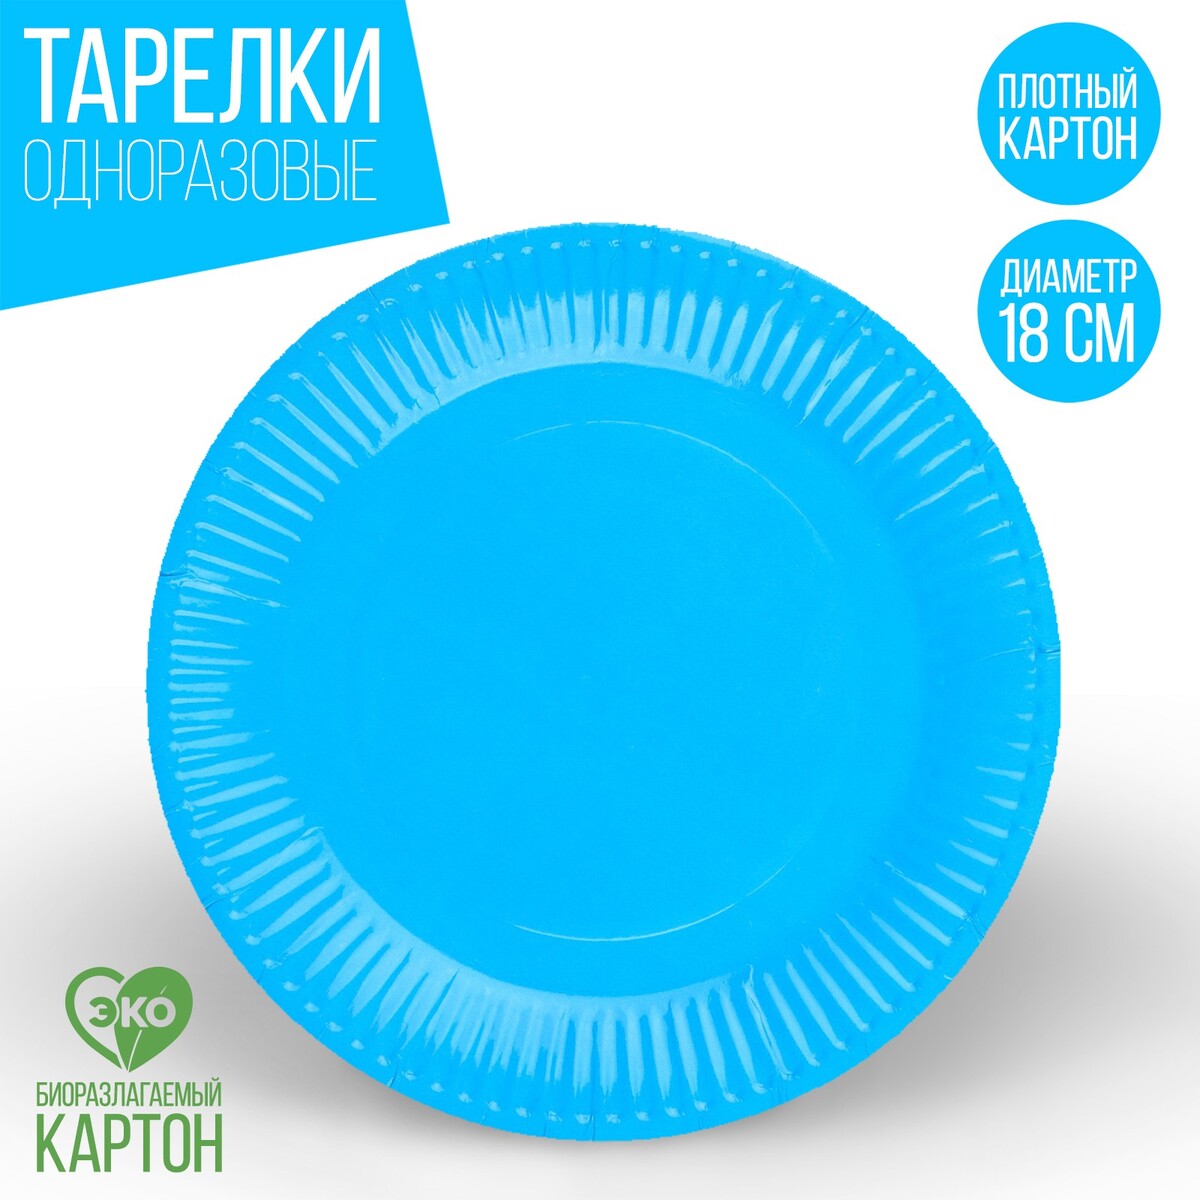 Тарелка одноразовая бумажная однотонная, голубой цвет 18 см, набор 10 штук тарелка одноразовая бумажная однотонная зеленый 18 см набор 10 штук